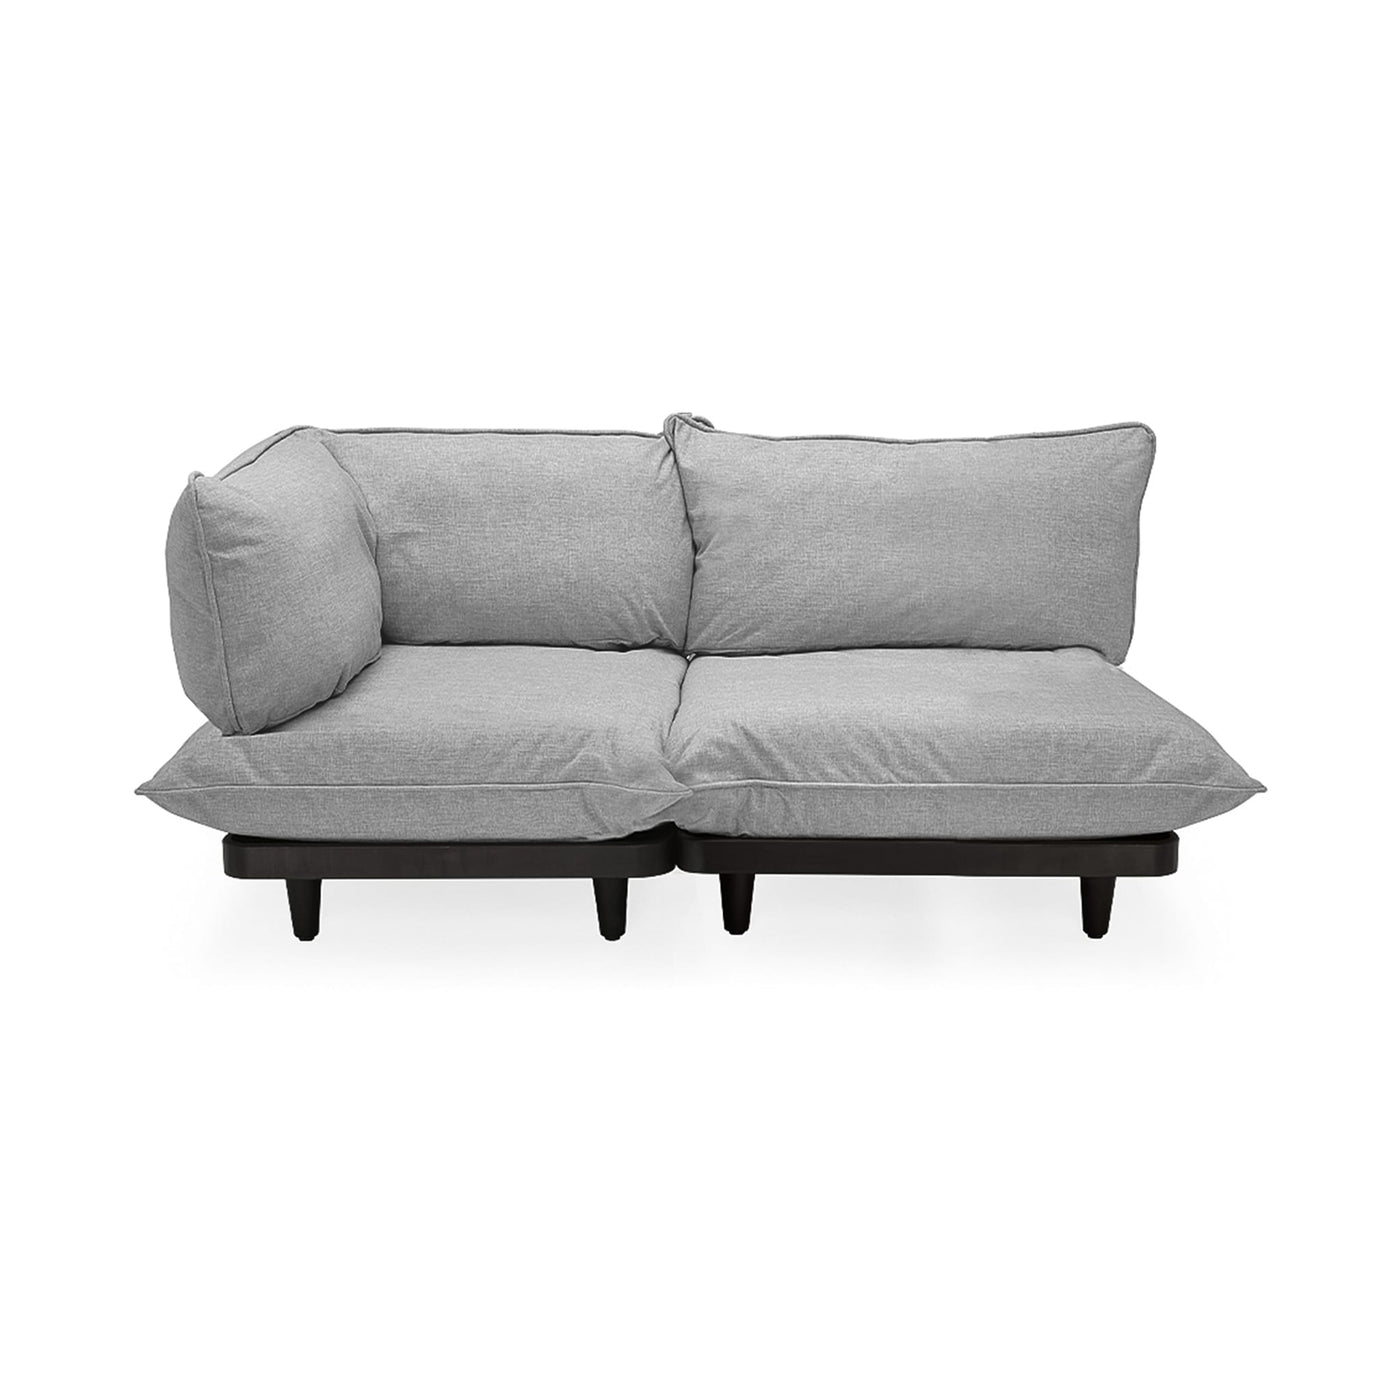 Transformez votre espace extérieur avec le sofa Paletti de Fatboy, durable et modulable. Gris pierre